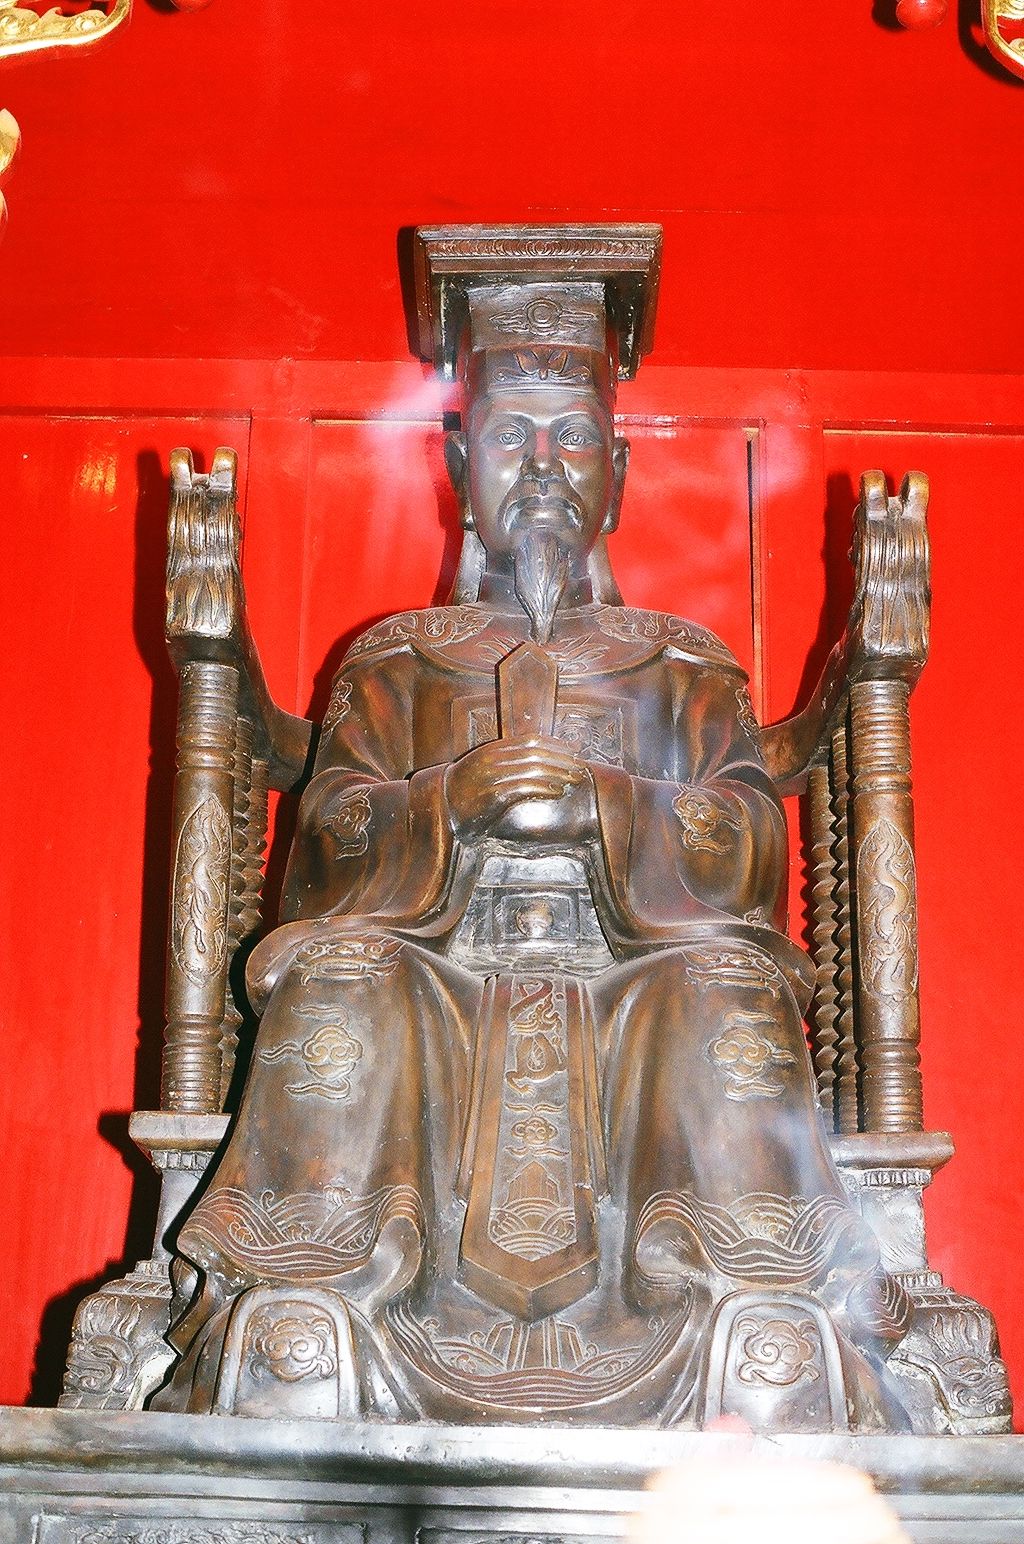 Nhà Hậu Lê, đặc biệt là đời vua Lê Thánh Tông, đã làm gì để quản lí đất nước ?